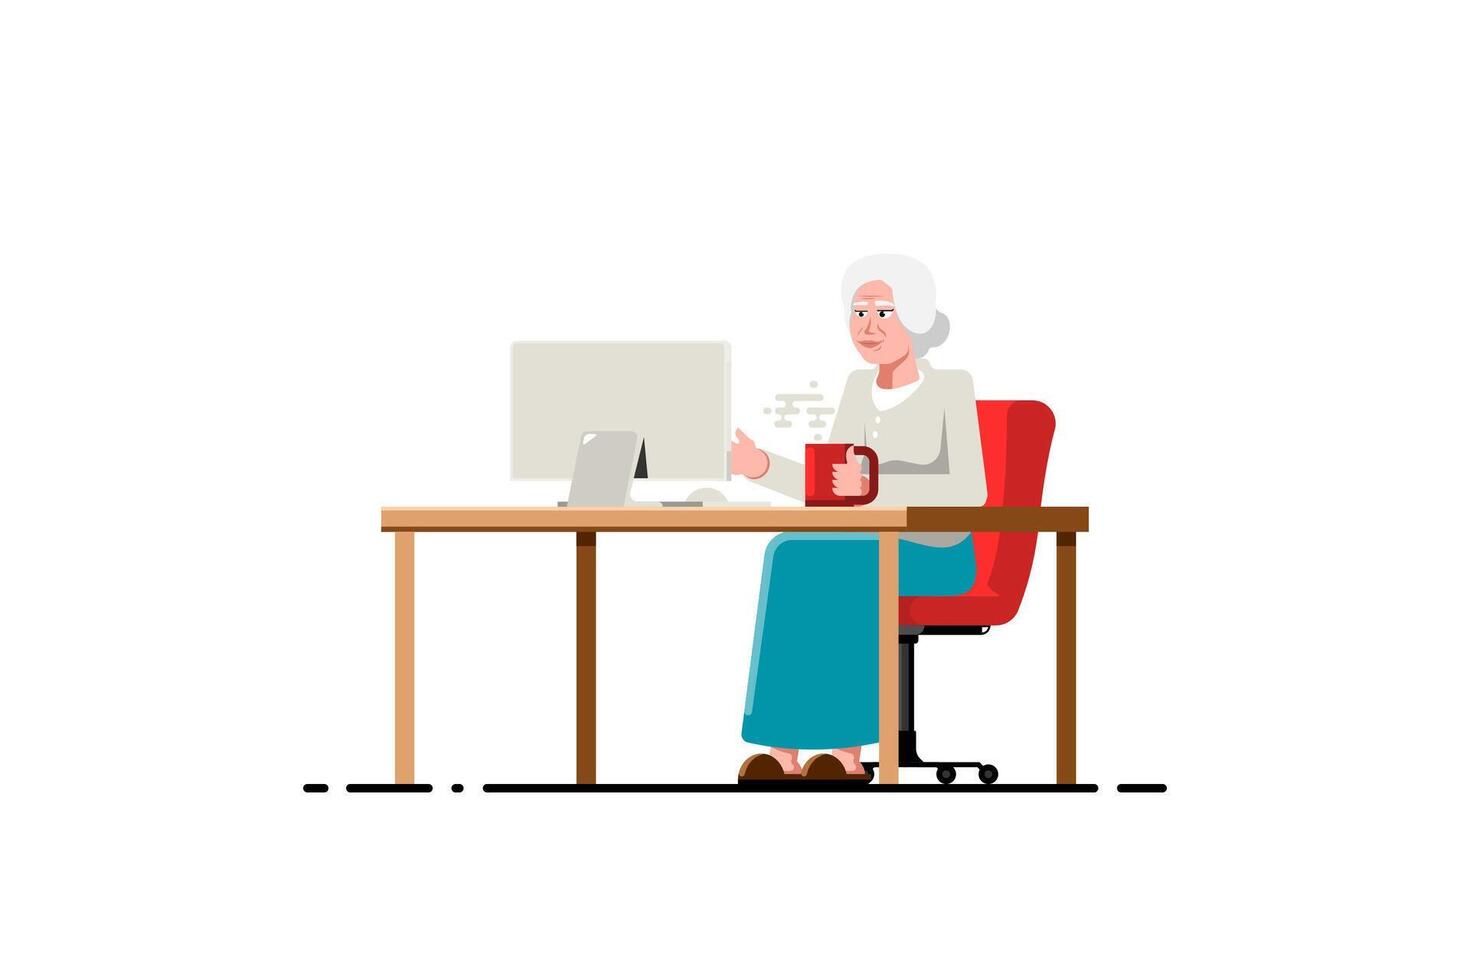 gammal kvinna använder sig av dator på isolerat bakgrund, vektor illustration.